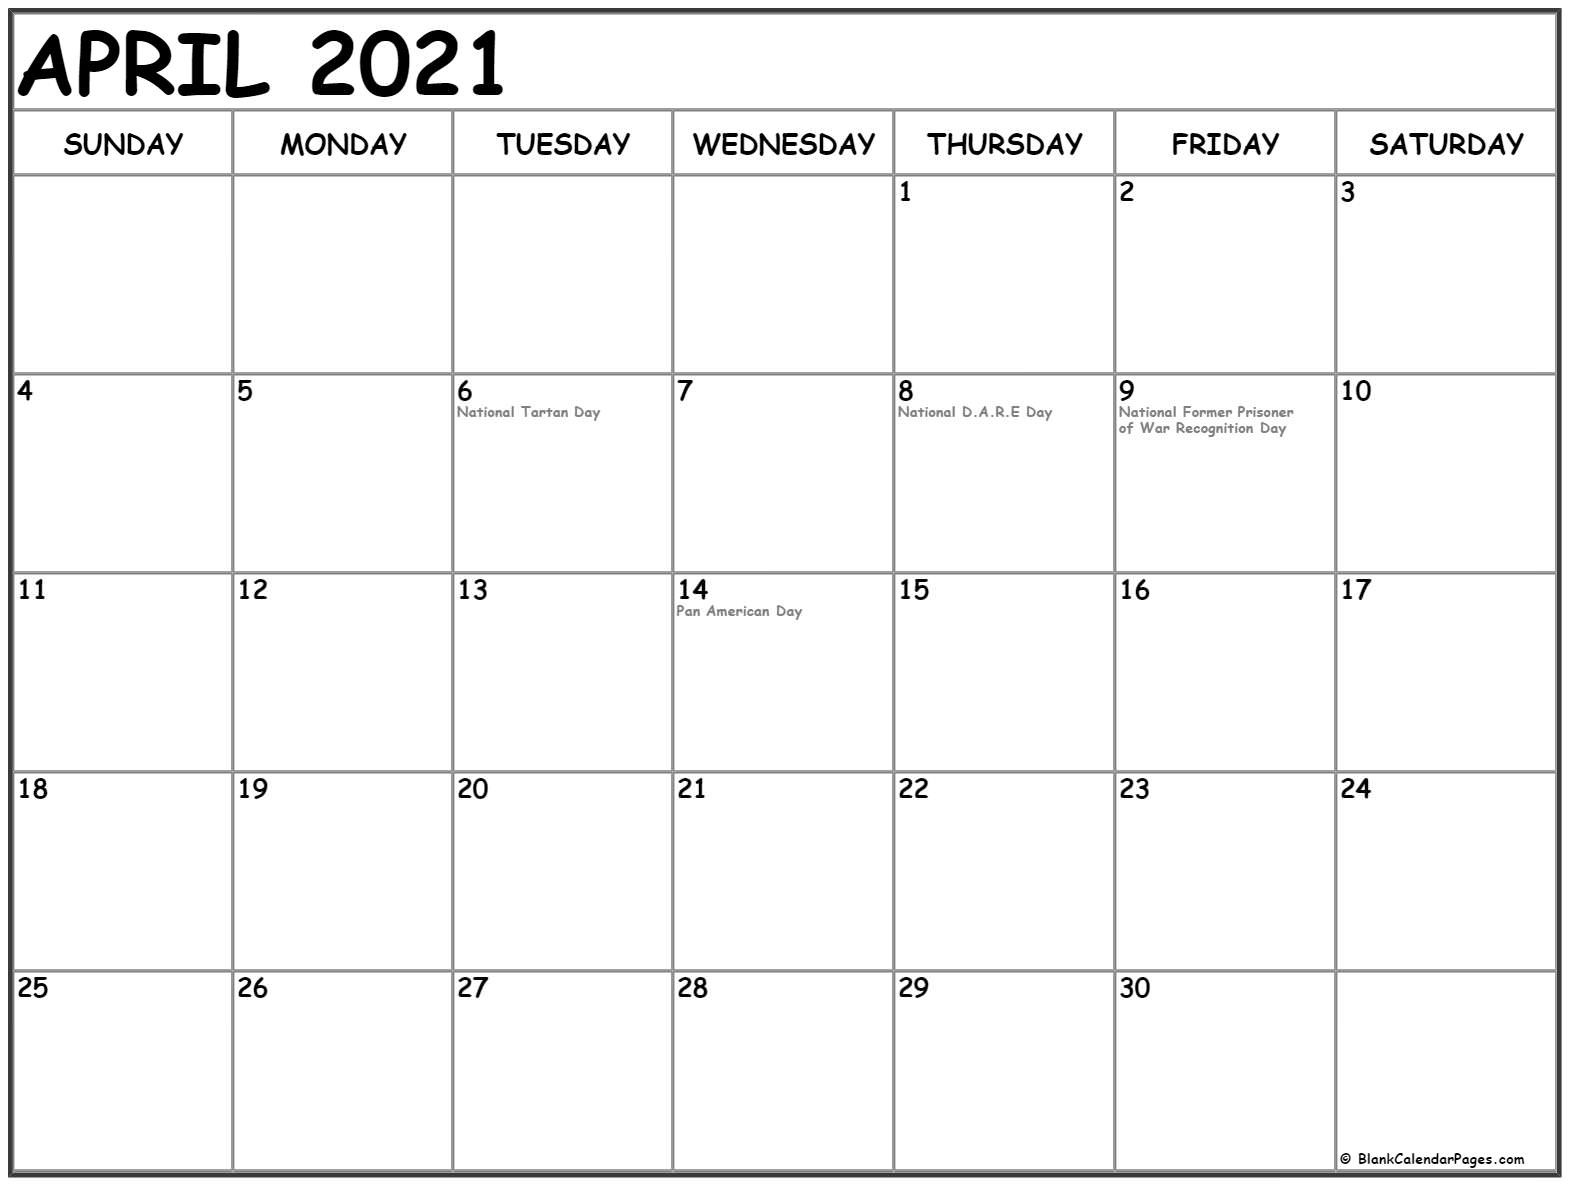 Collection Of April 2021 Calendars With Holidays-2021 April Calendar Printable Calendar